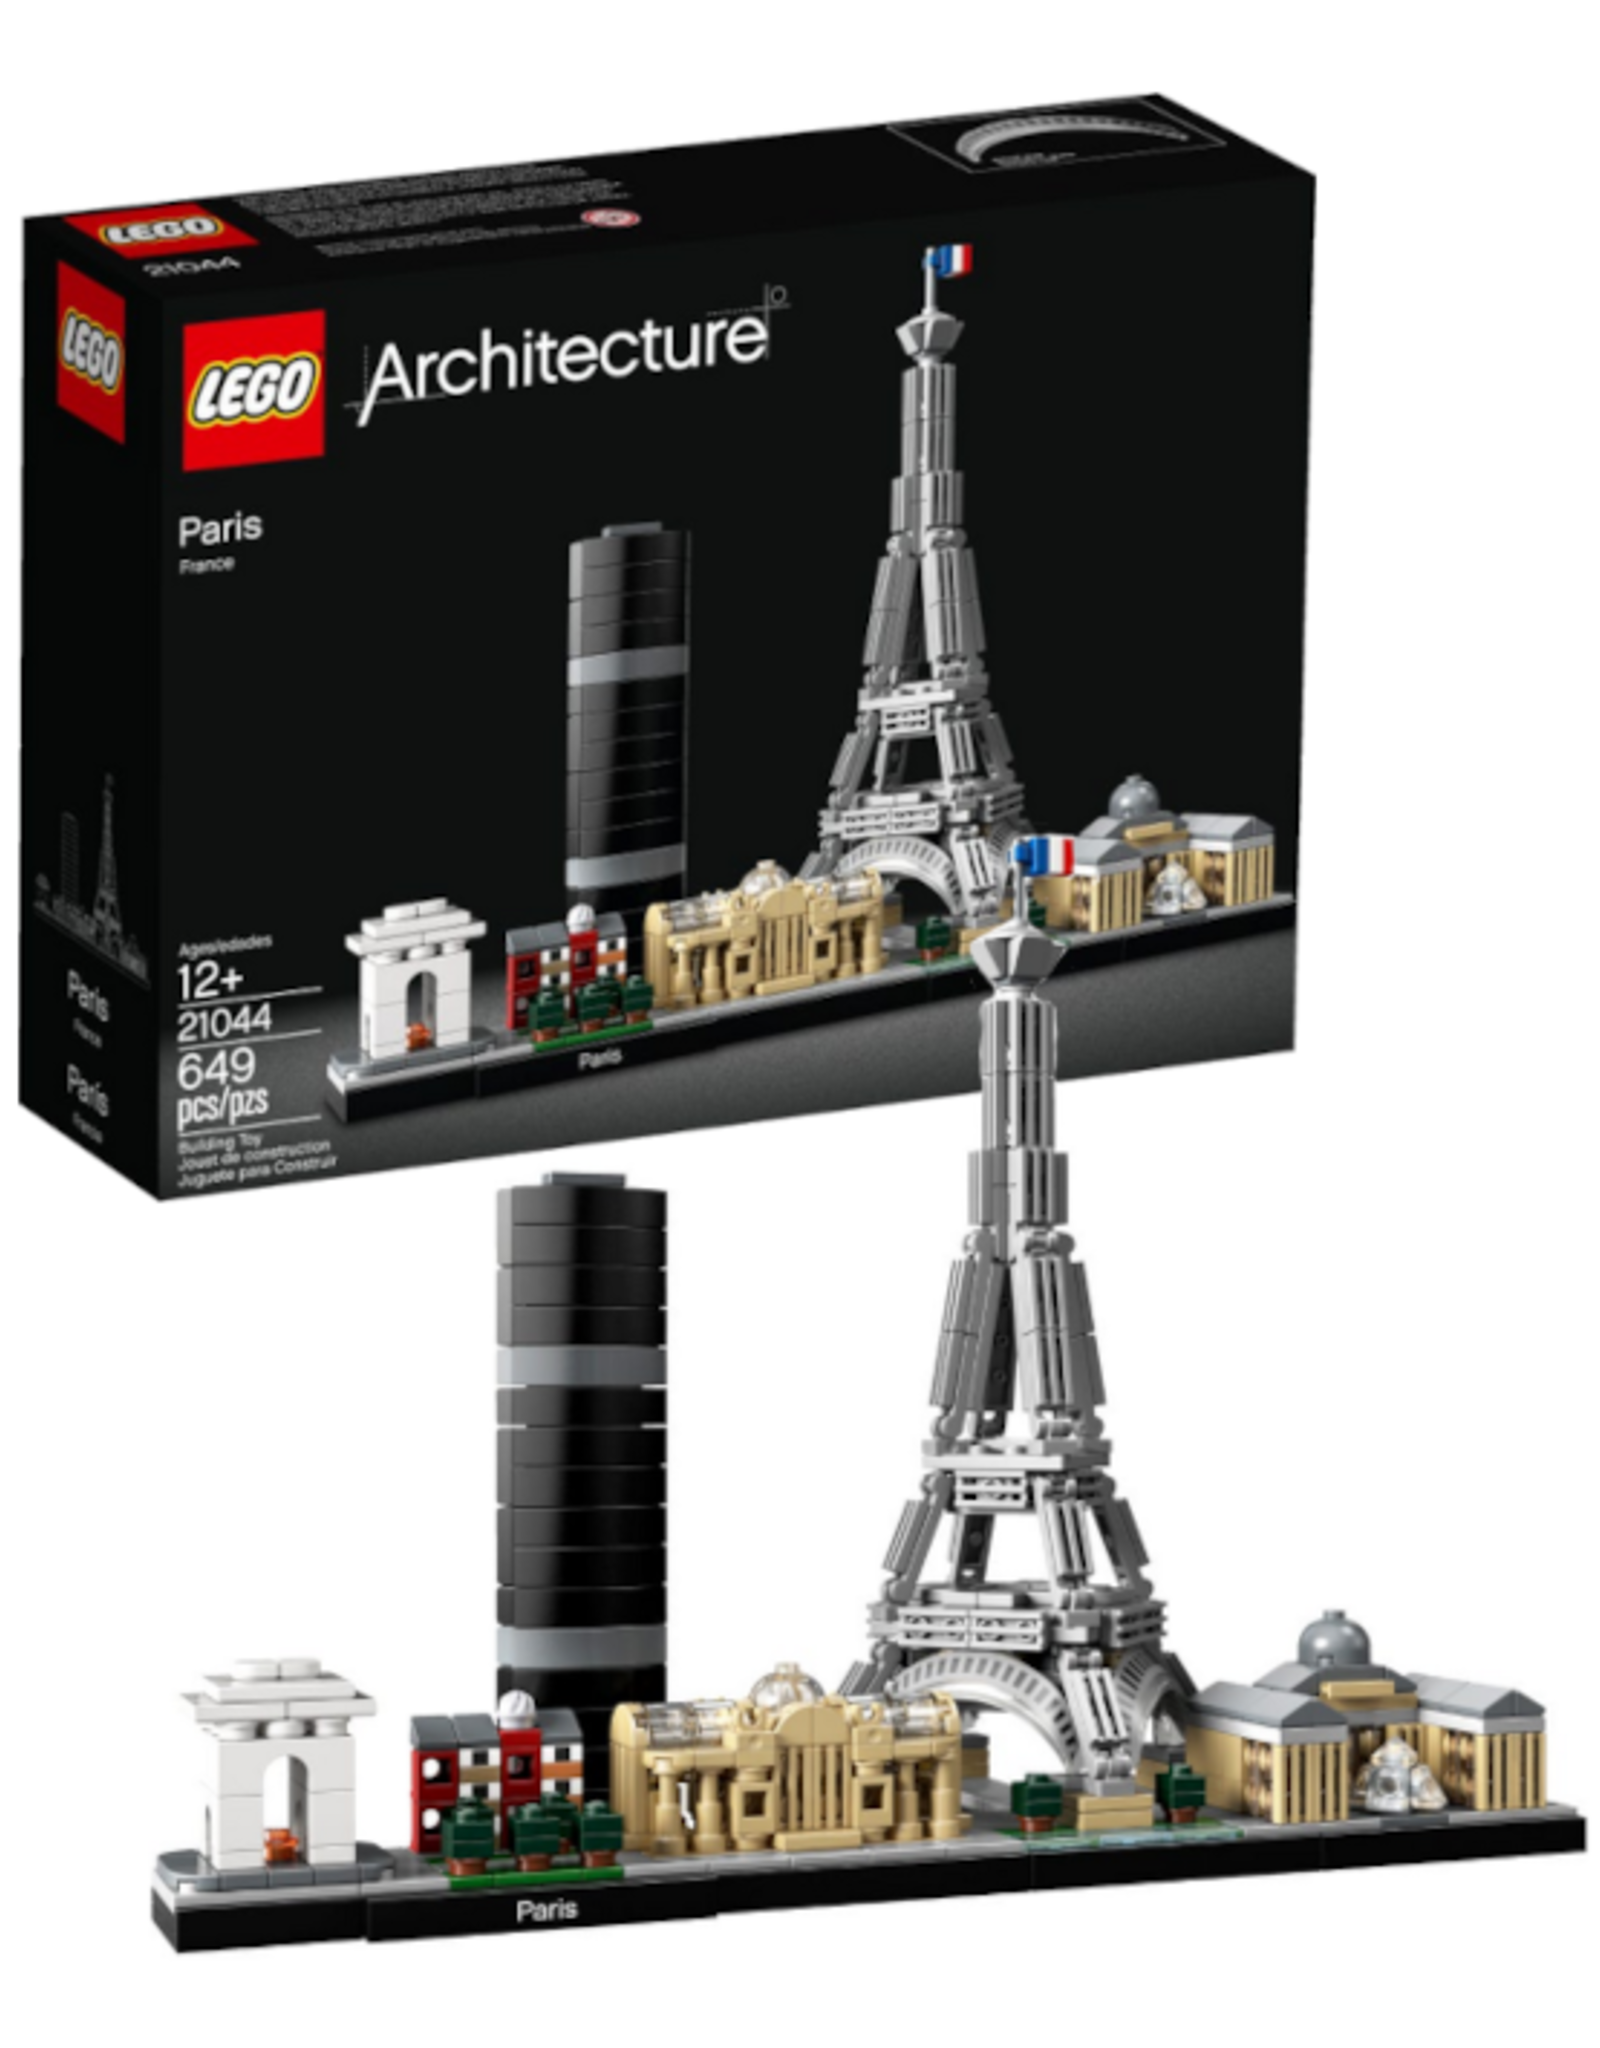 Lego Lego - Architecture - 21044 - Paris